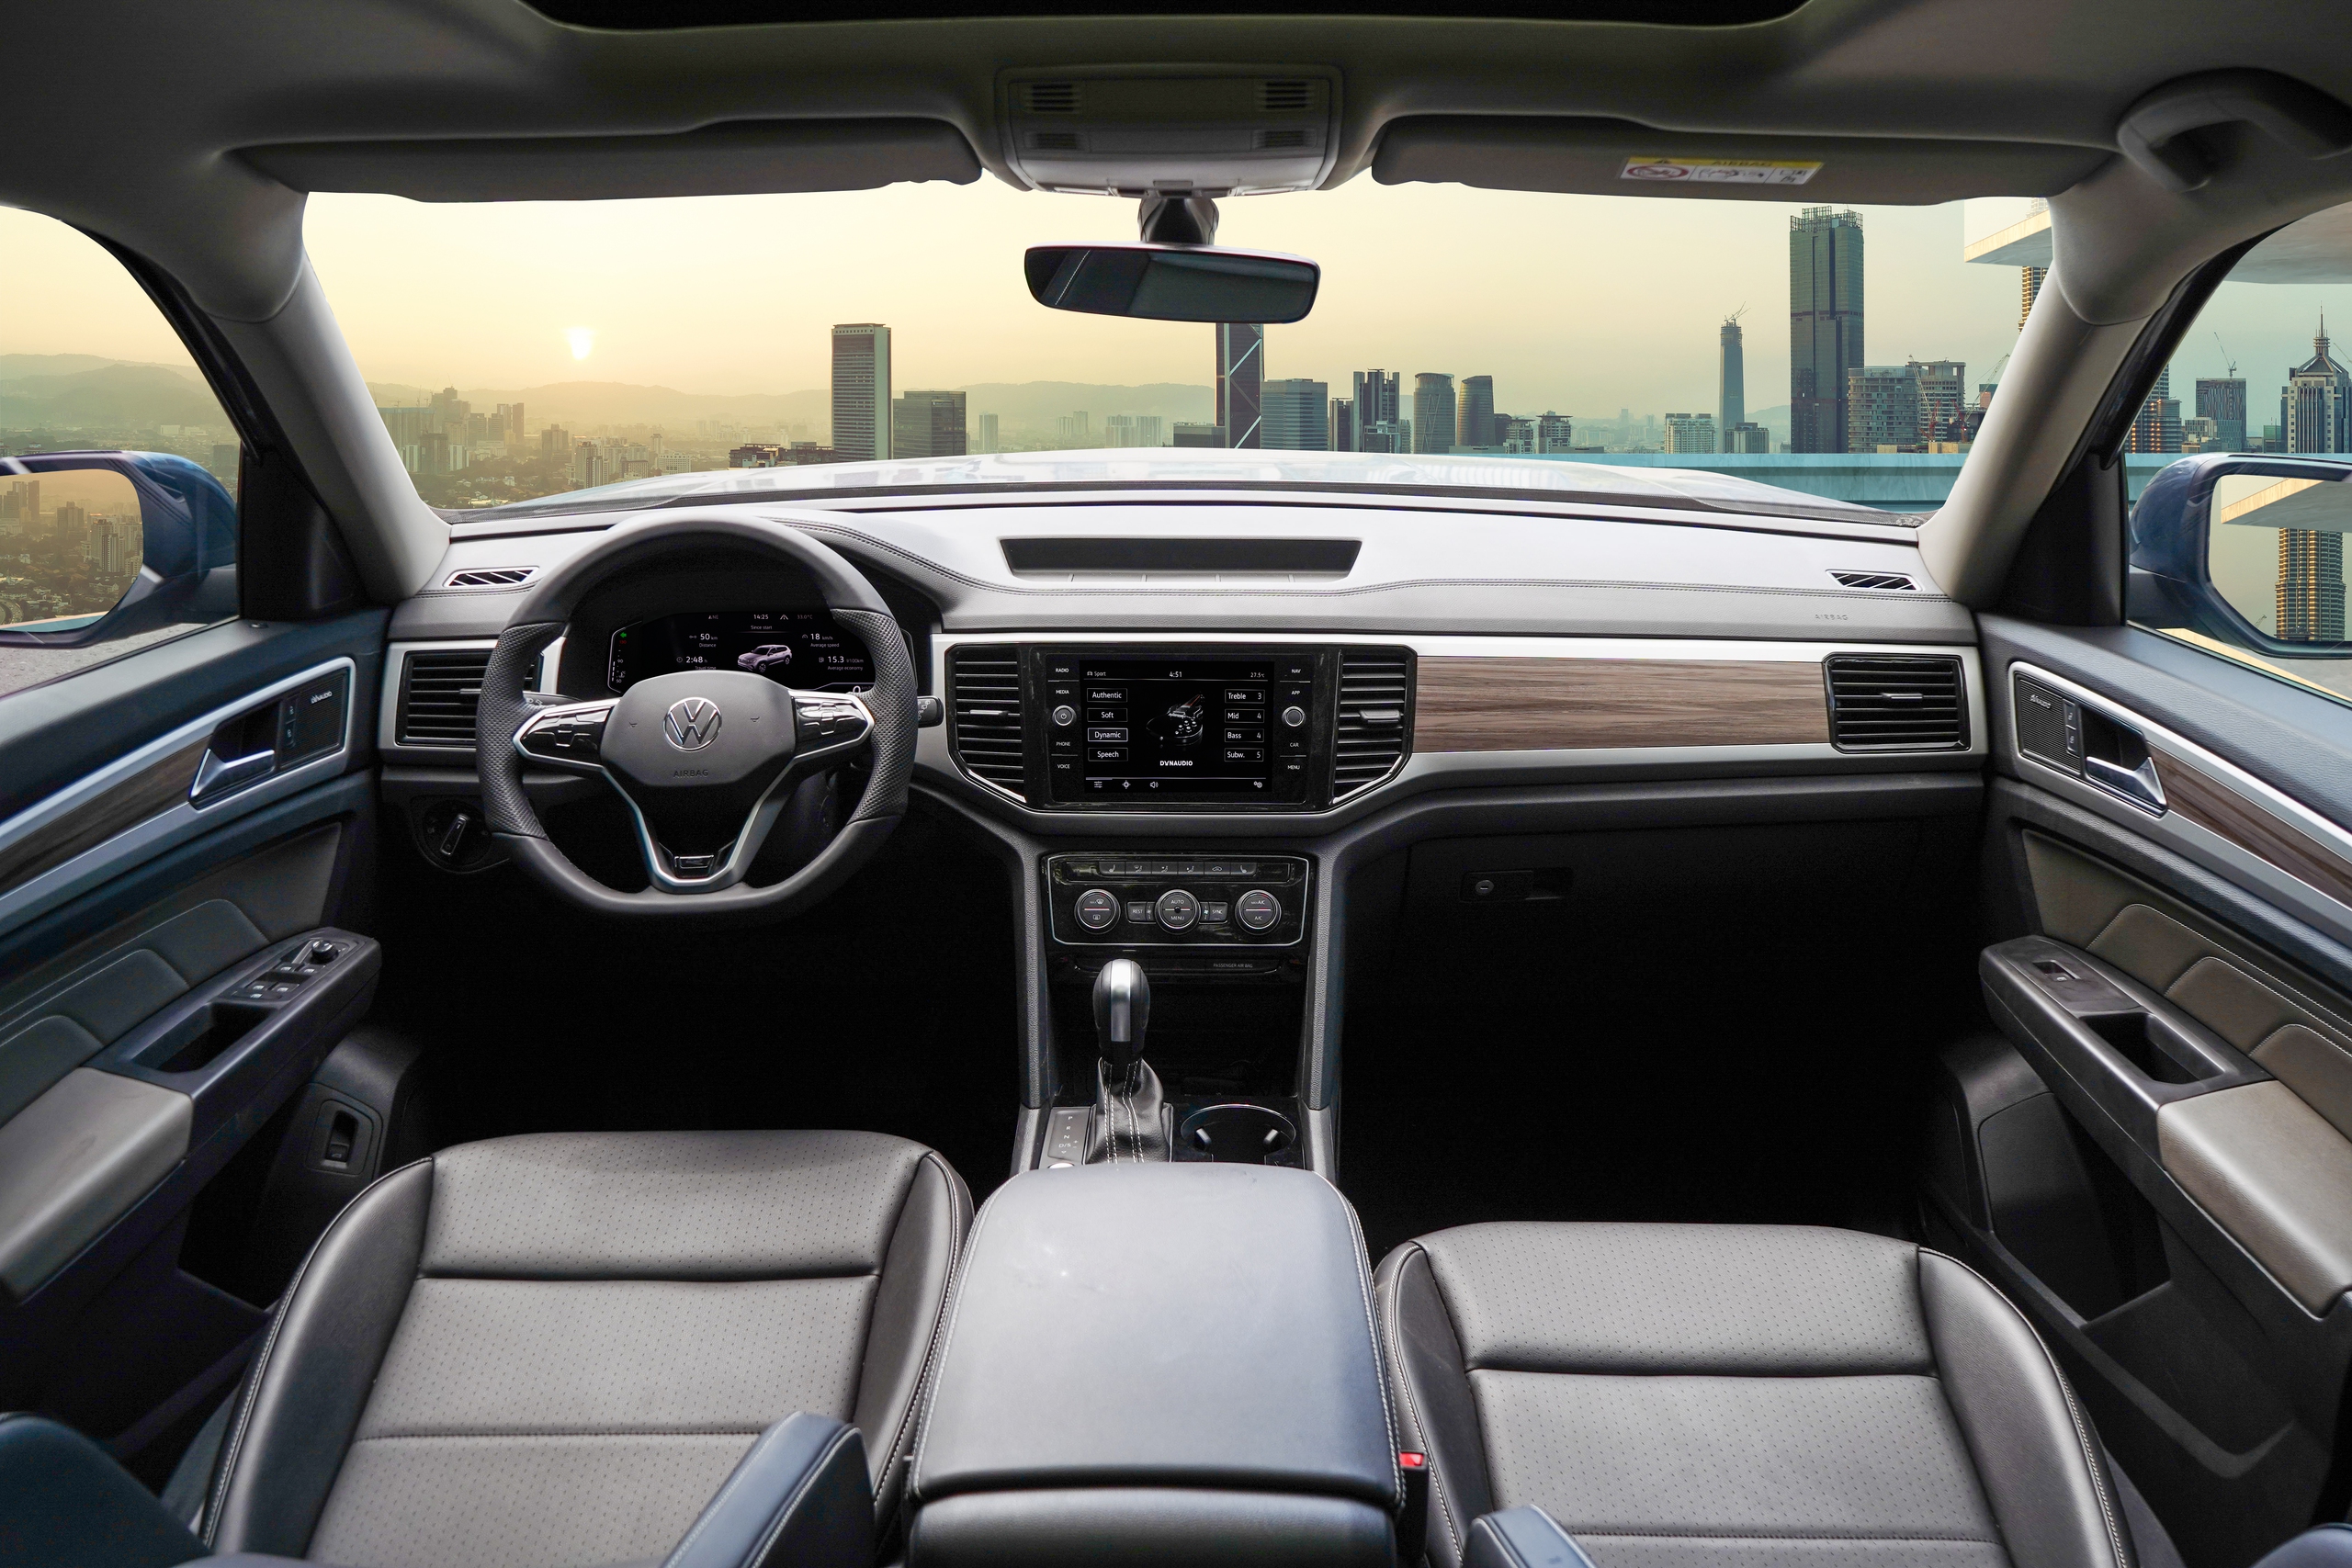 Đắt hơn 140 triệu đồng, mua Volkswagen Teramont bản giới hạn hay Ford Explorer nhiều trang bị an toàn- Ảnh 5.